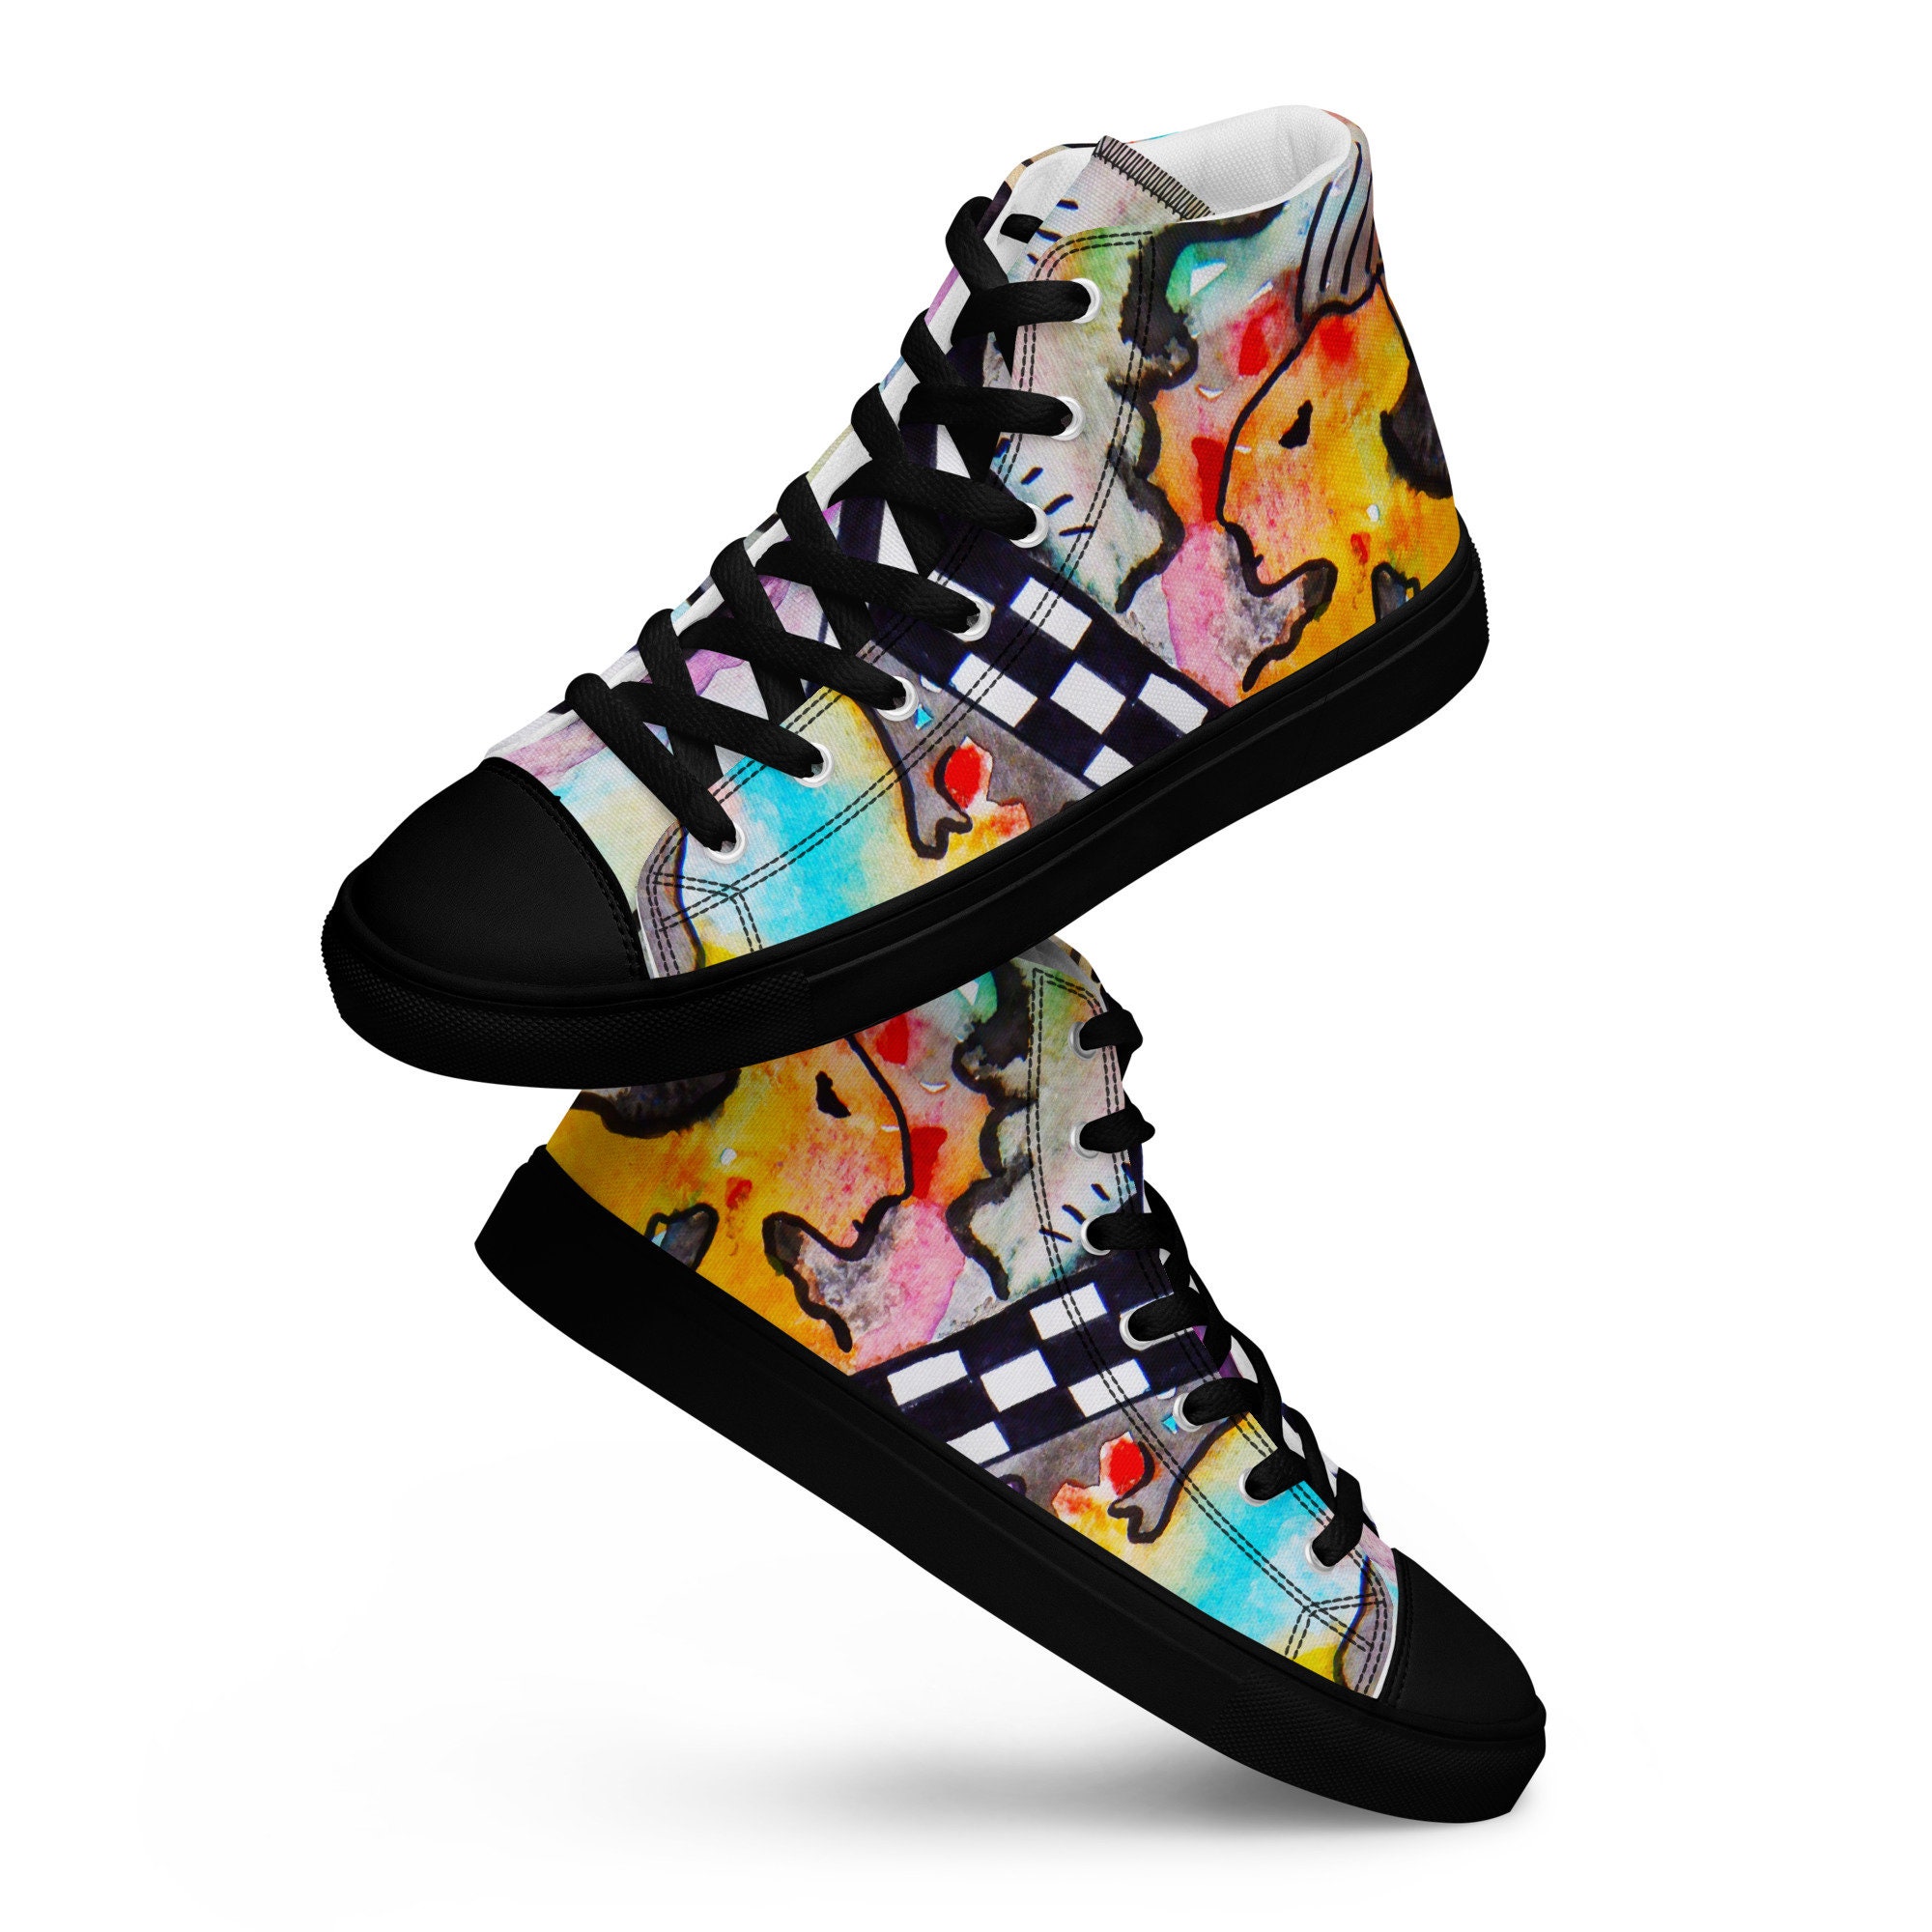 Discover Zapatillas Altas con estampado de Rock n Roll estético, Zapatillas Y2K estilo Rock música